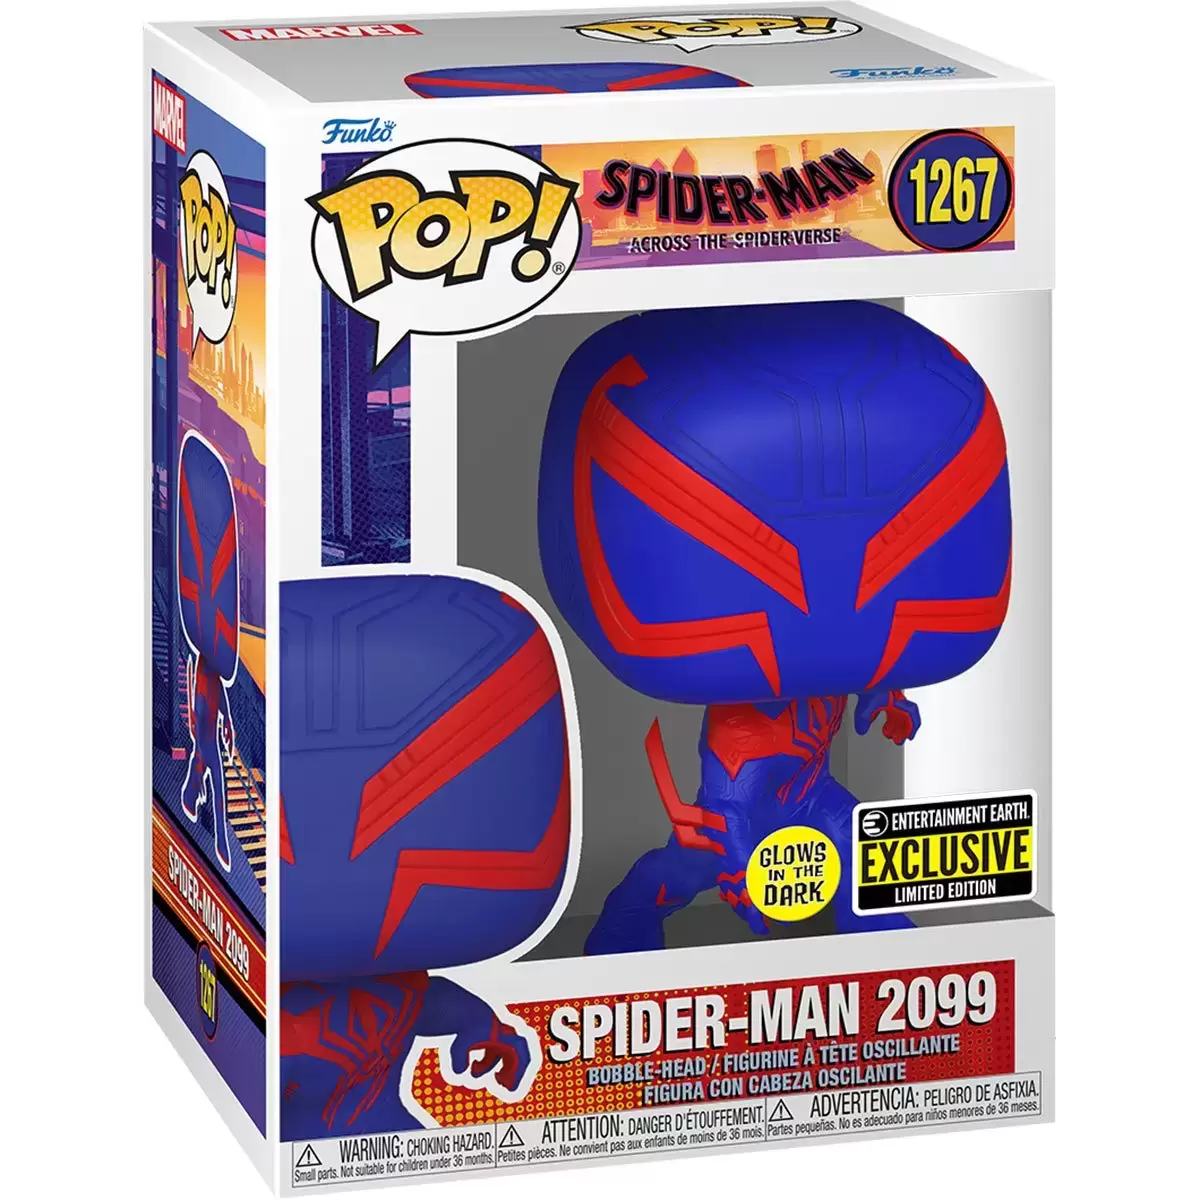 POP! MARVEL - Spider-Man Across The Spider-Verse - Spider-Man 2099 GITD